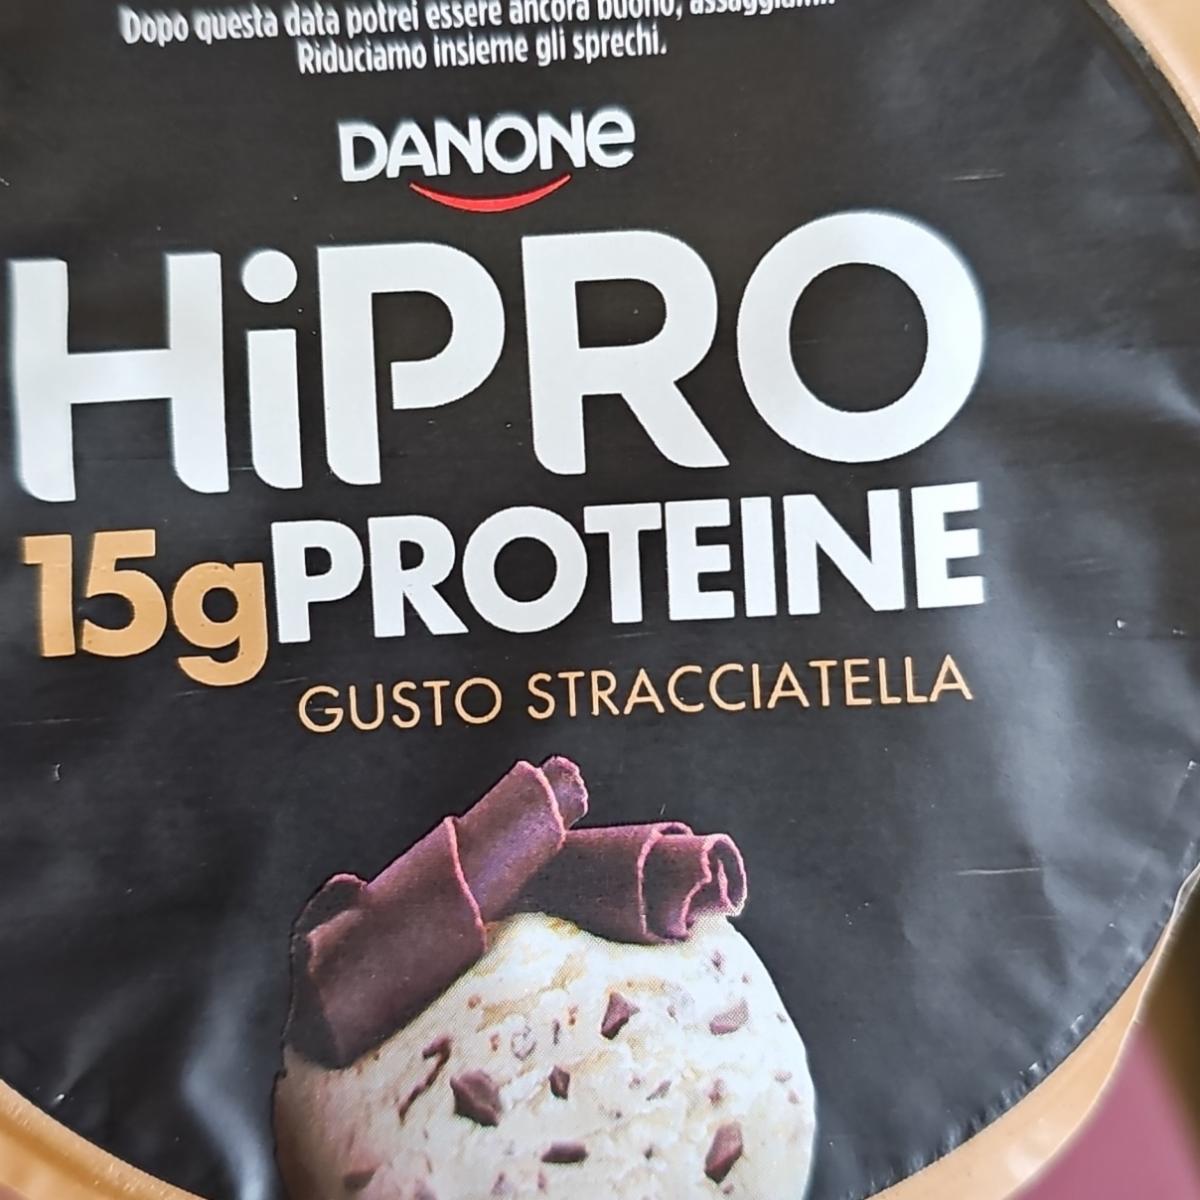 Фото - Hipro proteine gusto stracciatella Danone